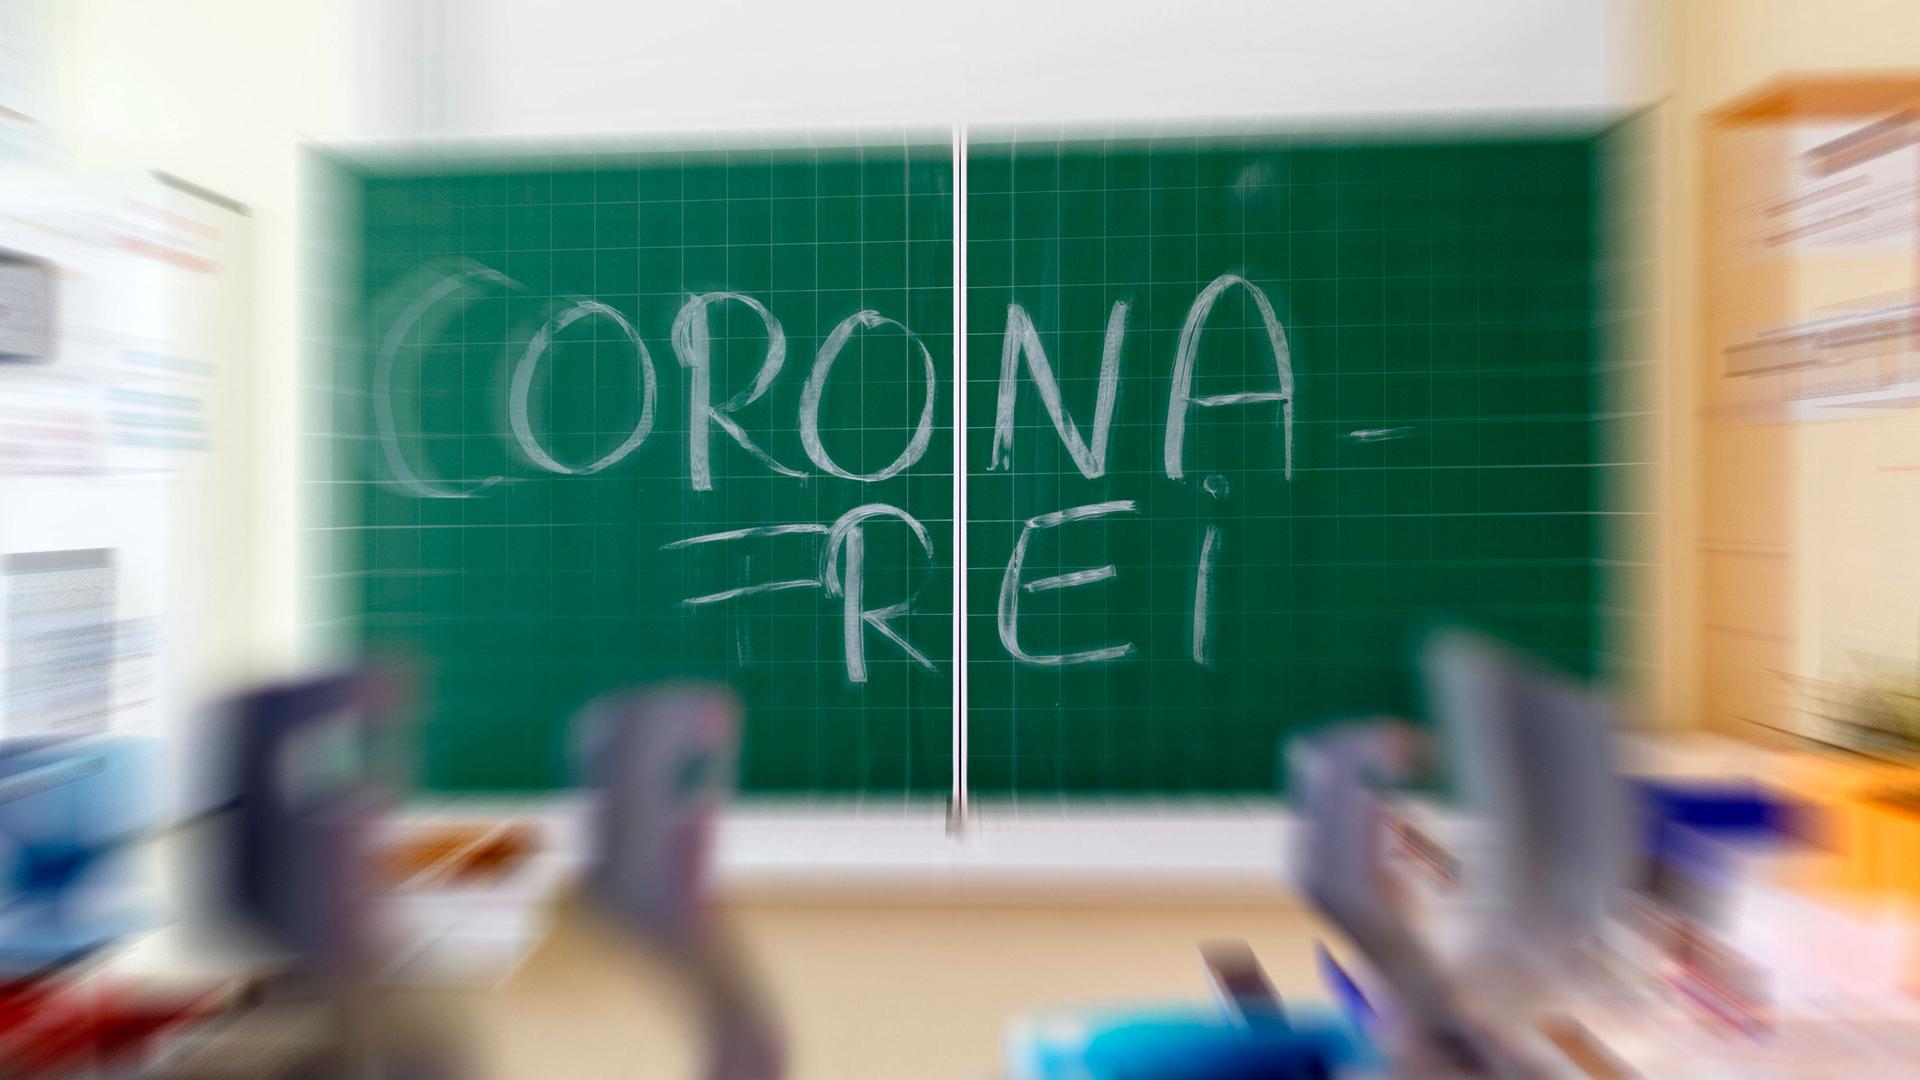 Corona-frei steht auf einer Schultafel.